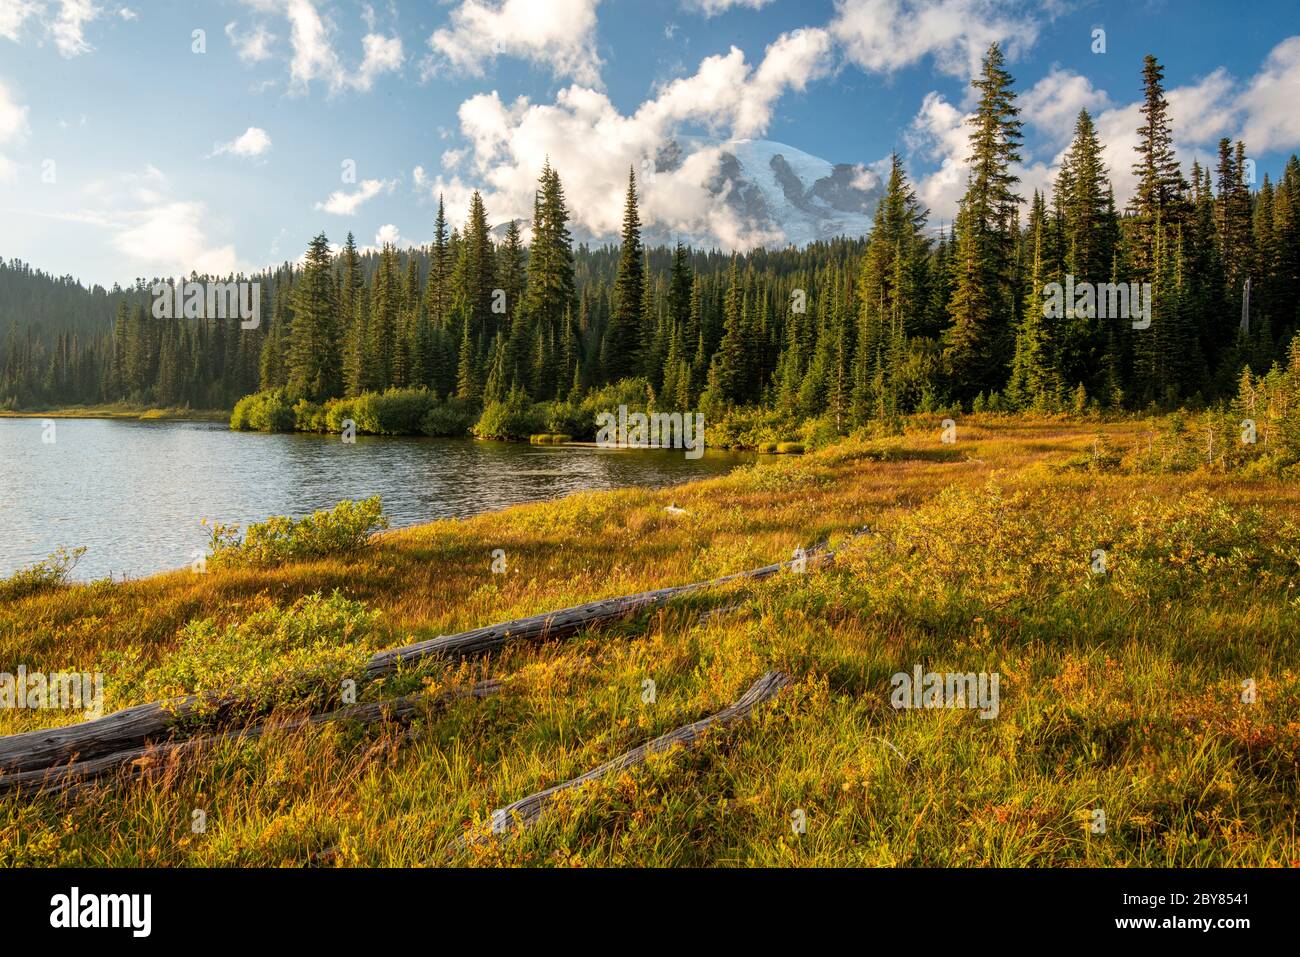 USA, West Coast, Washington, Mount Rainier National Park, Reflection lake Stock Photo